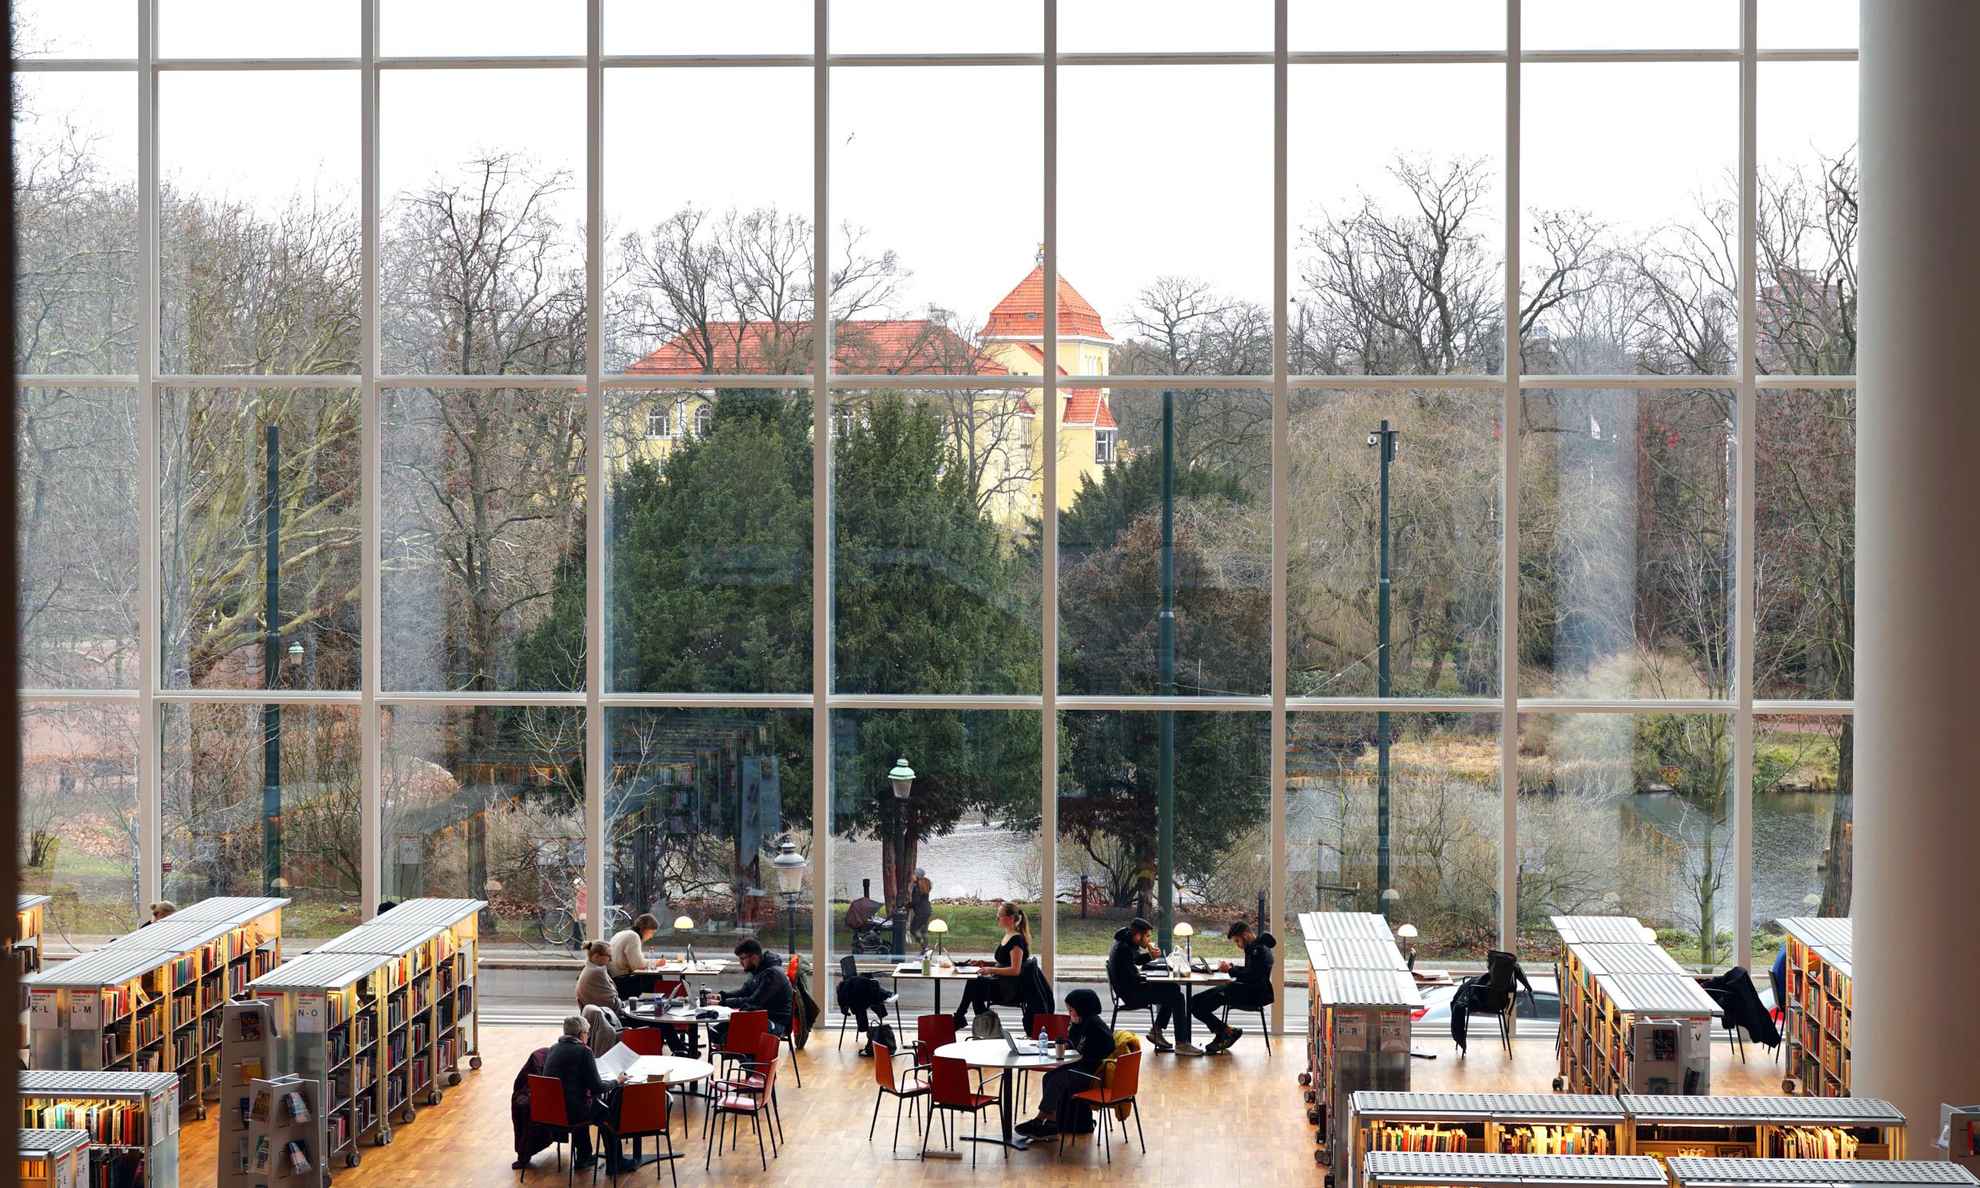 Malmö Stadsbibliotheek